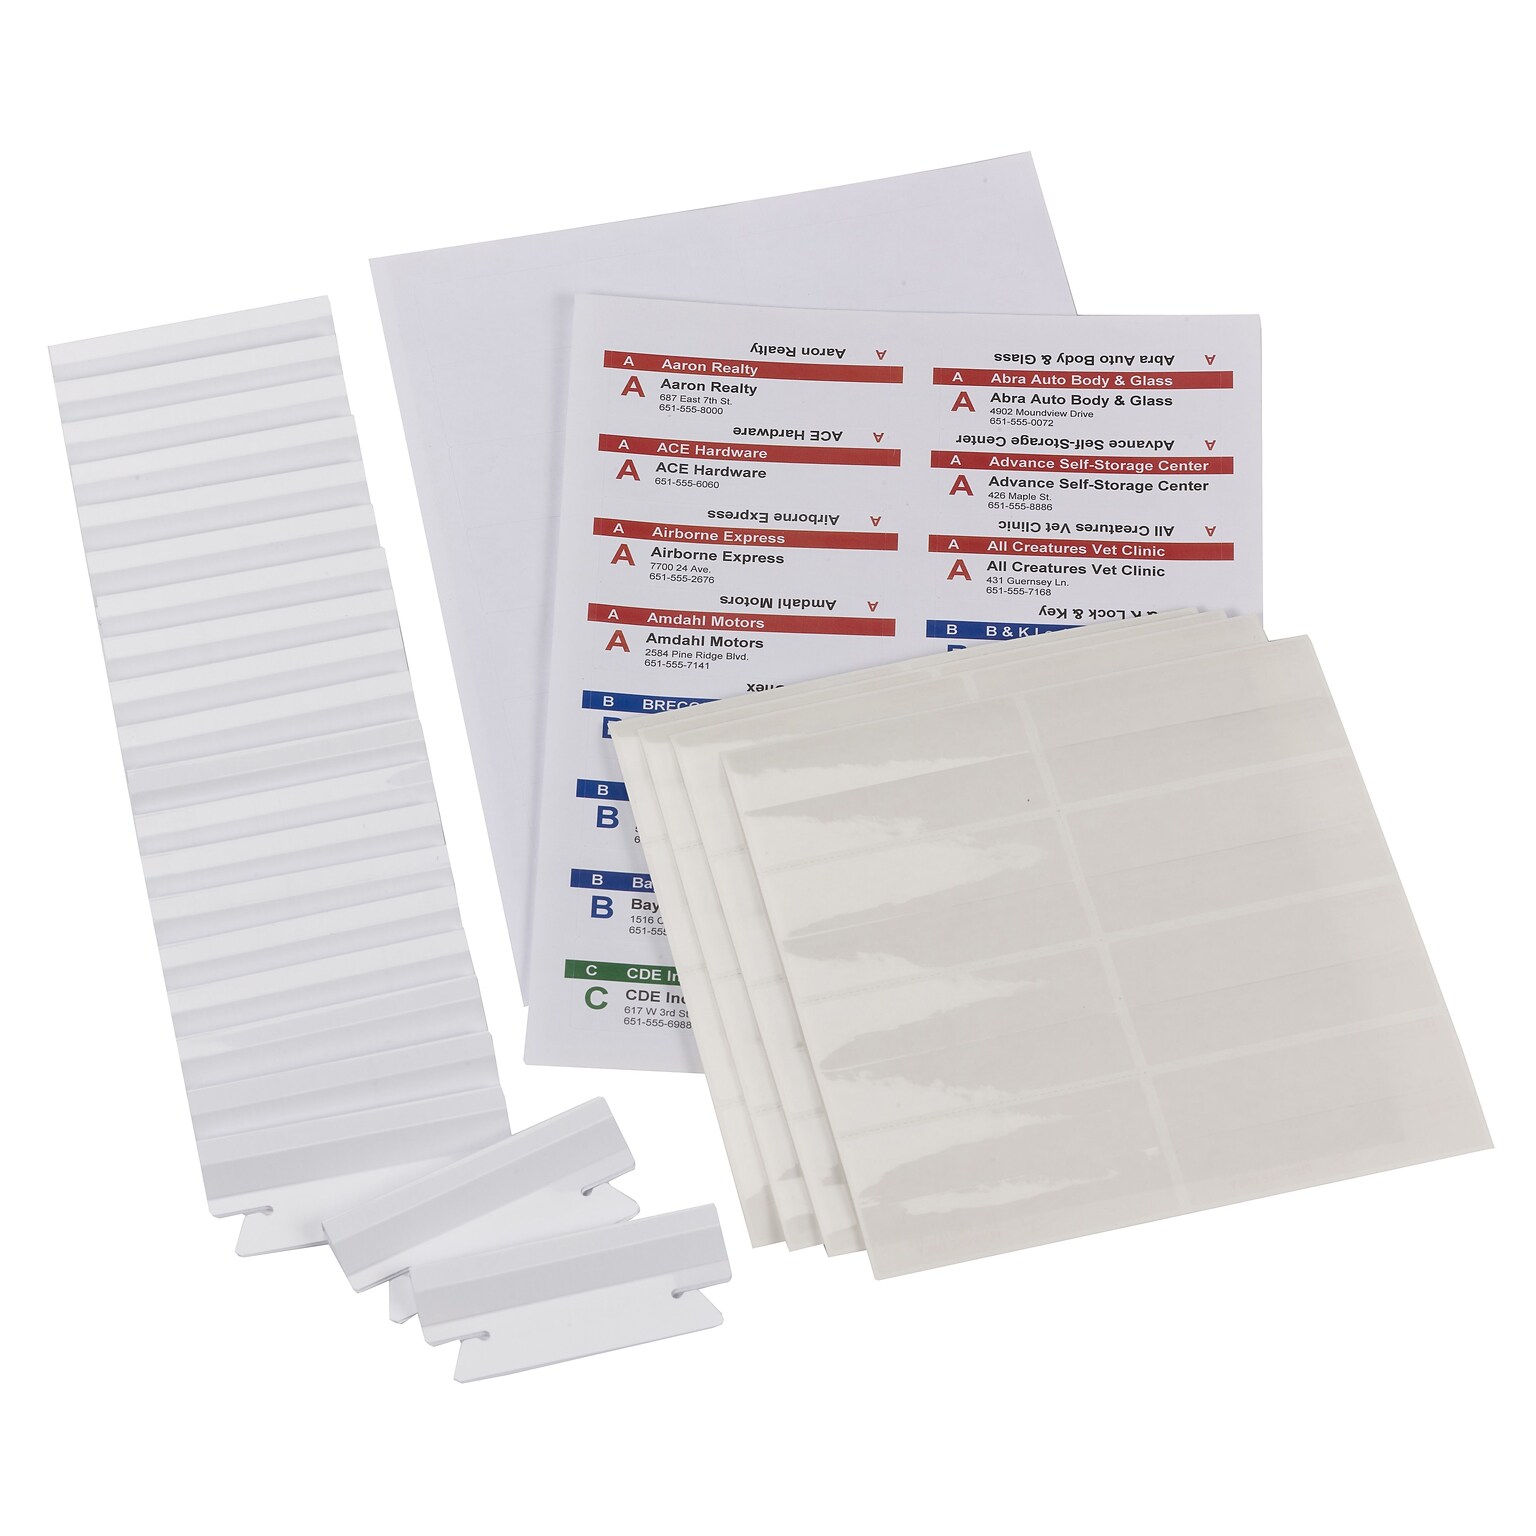 Smead Viewables File Folder Labels, 3.5 x 1.25, White, 25 Labels/Pack (64905)